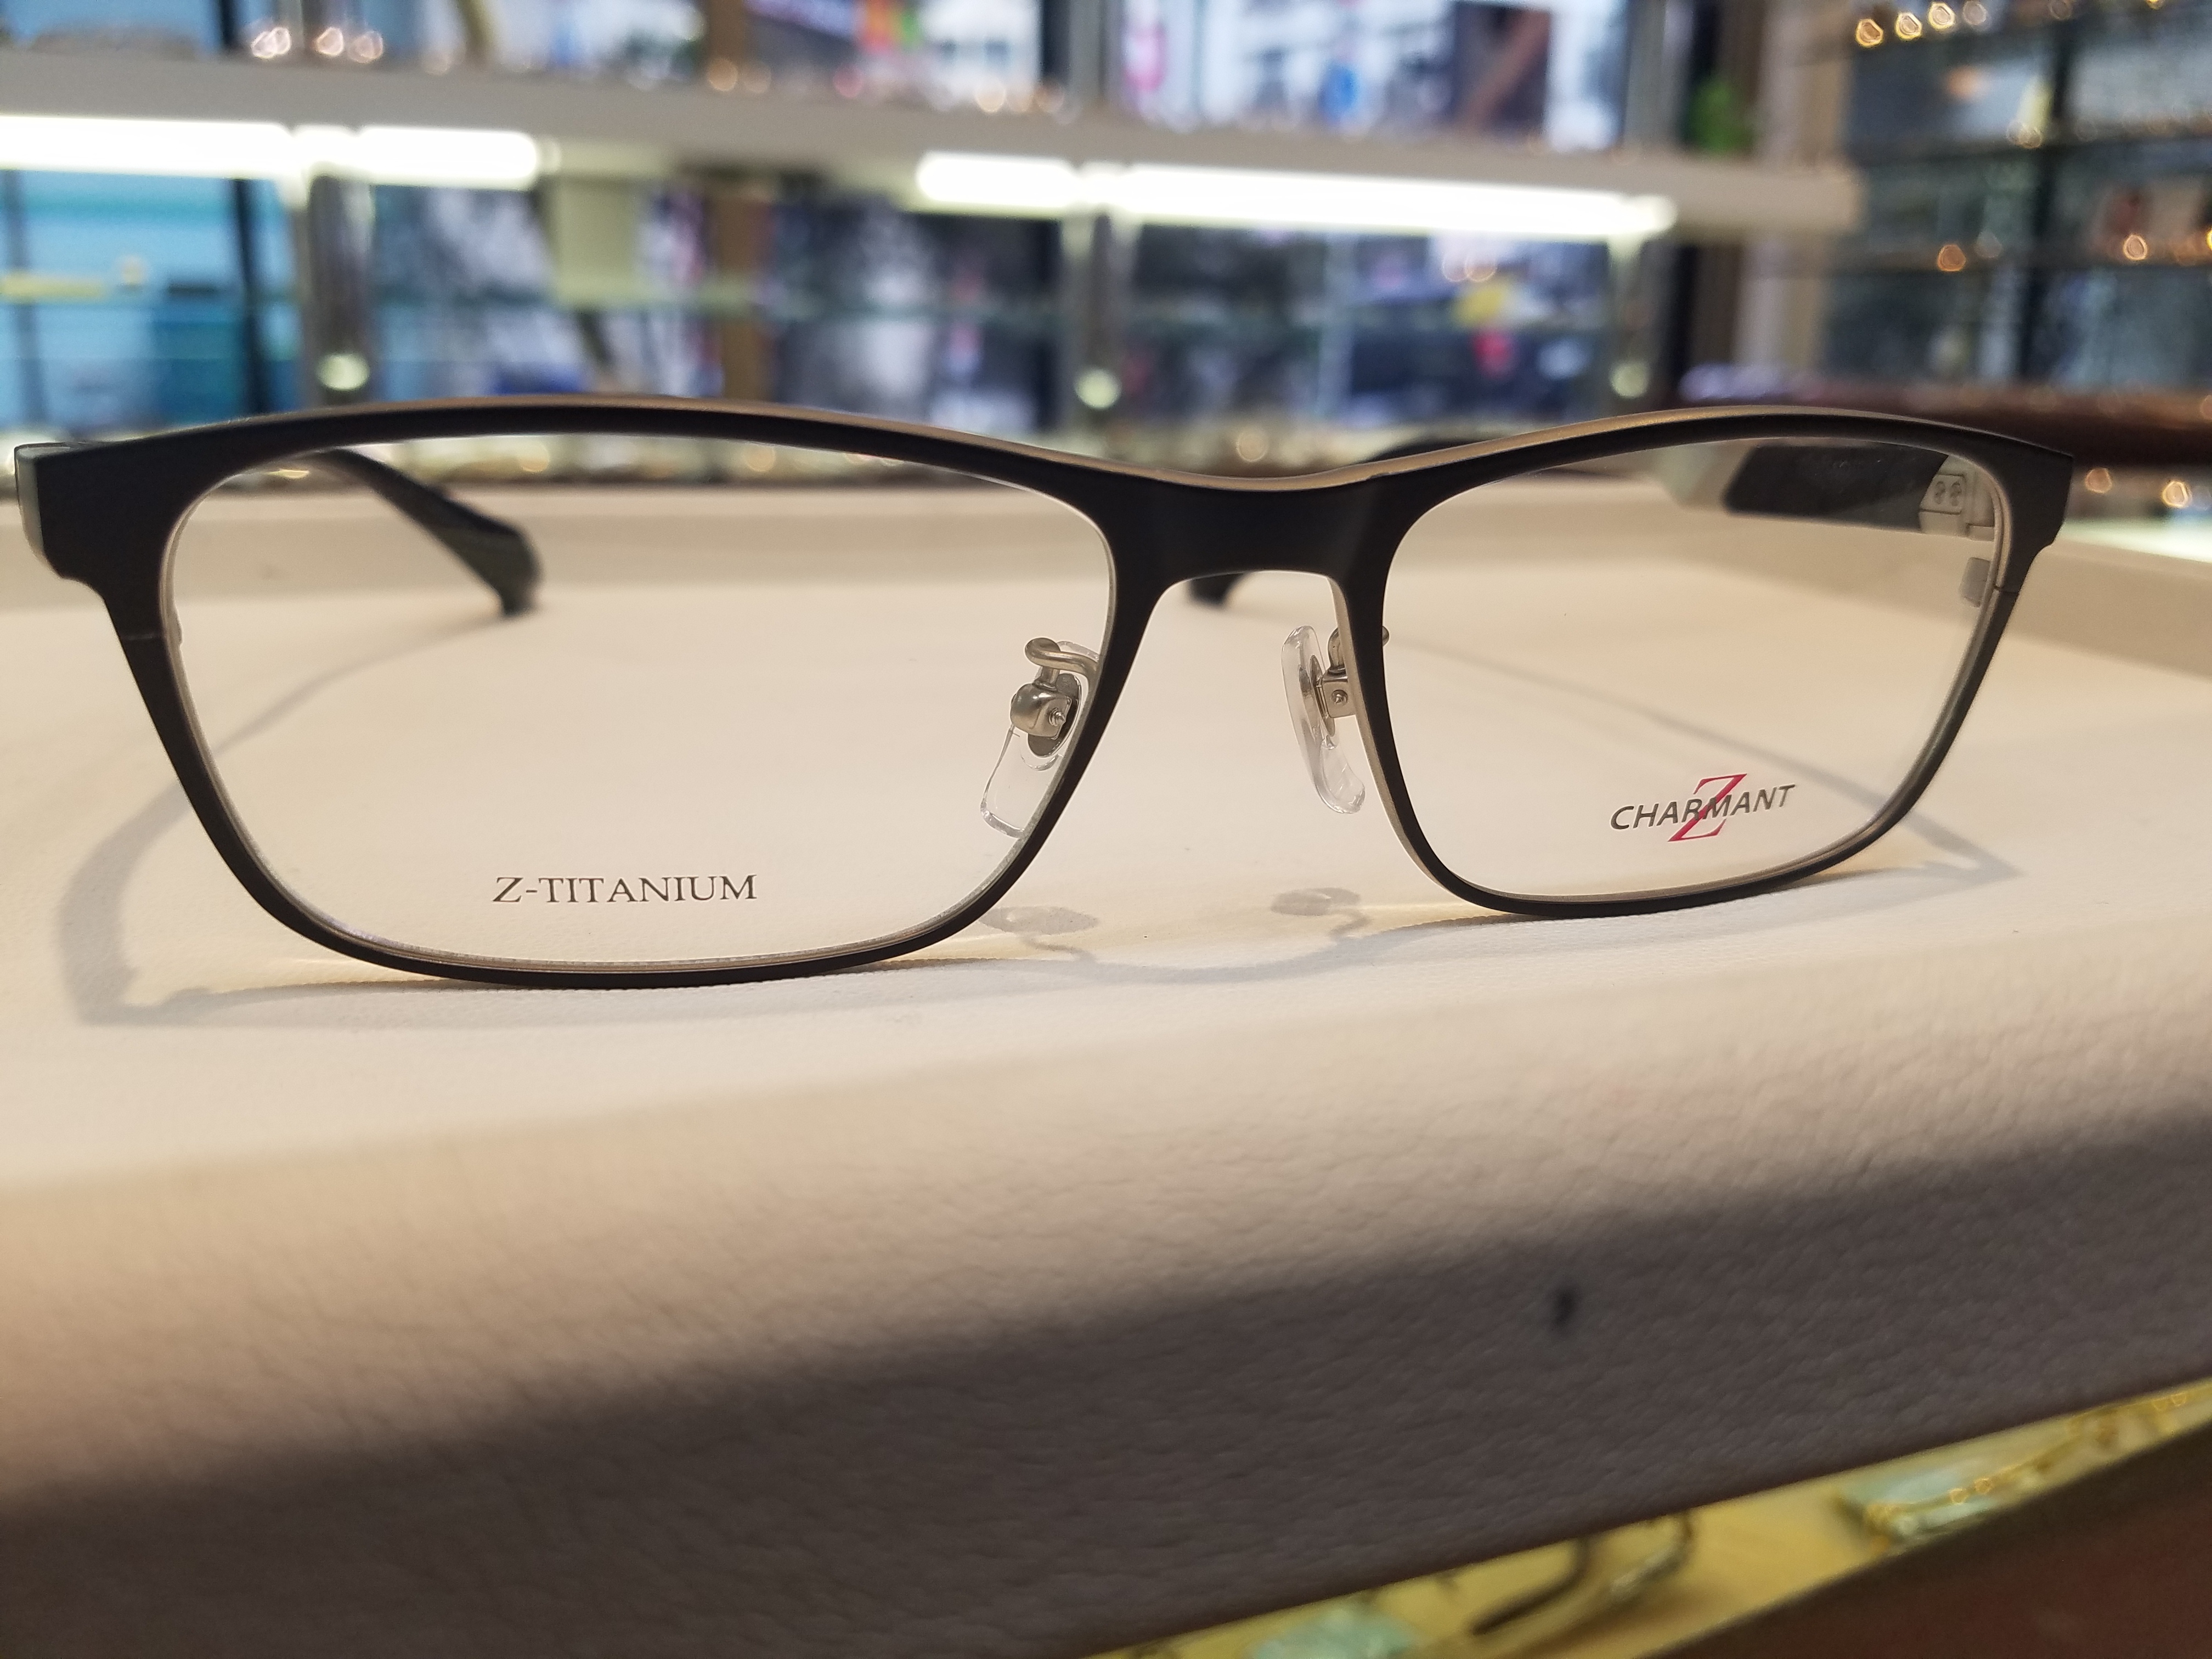 ChARMANT Z(シャルマンゼット)入荷！: メガネのプロ カナイメガネ